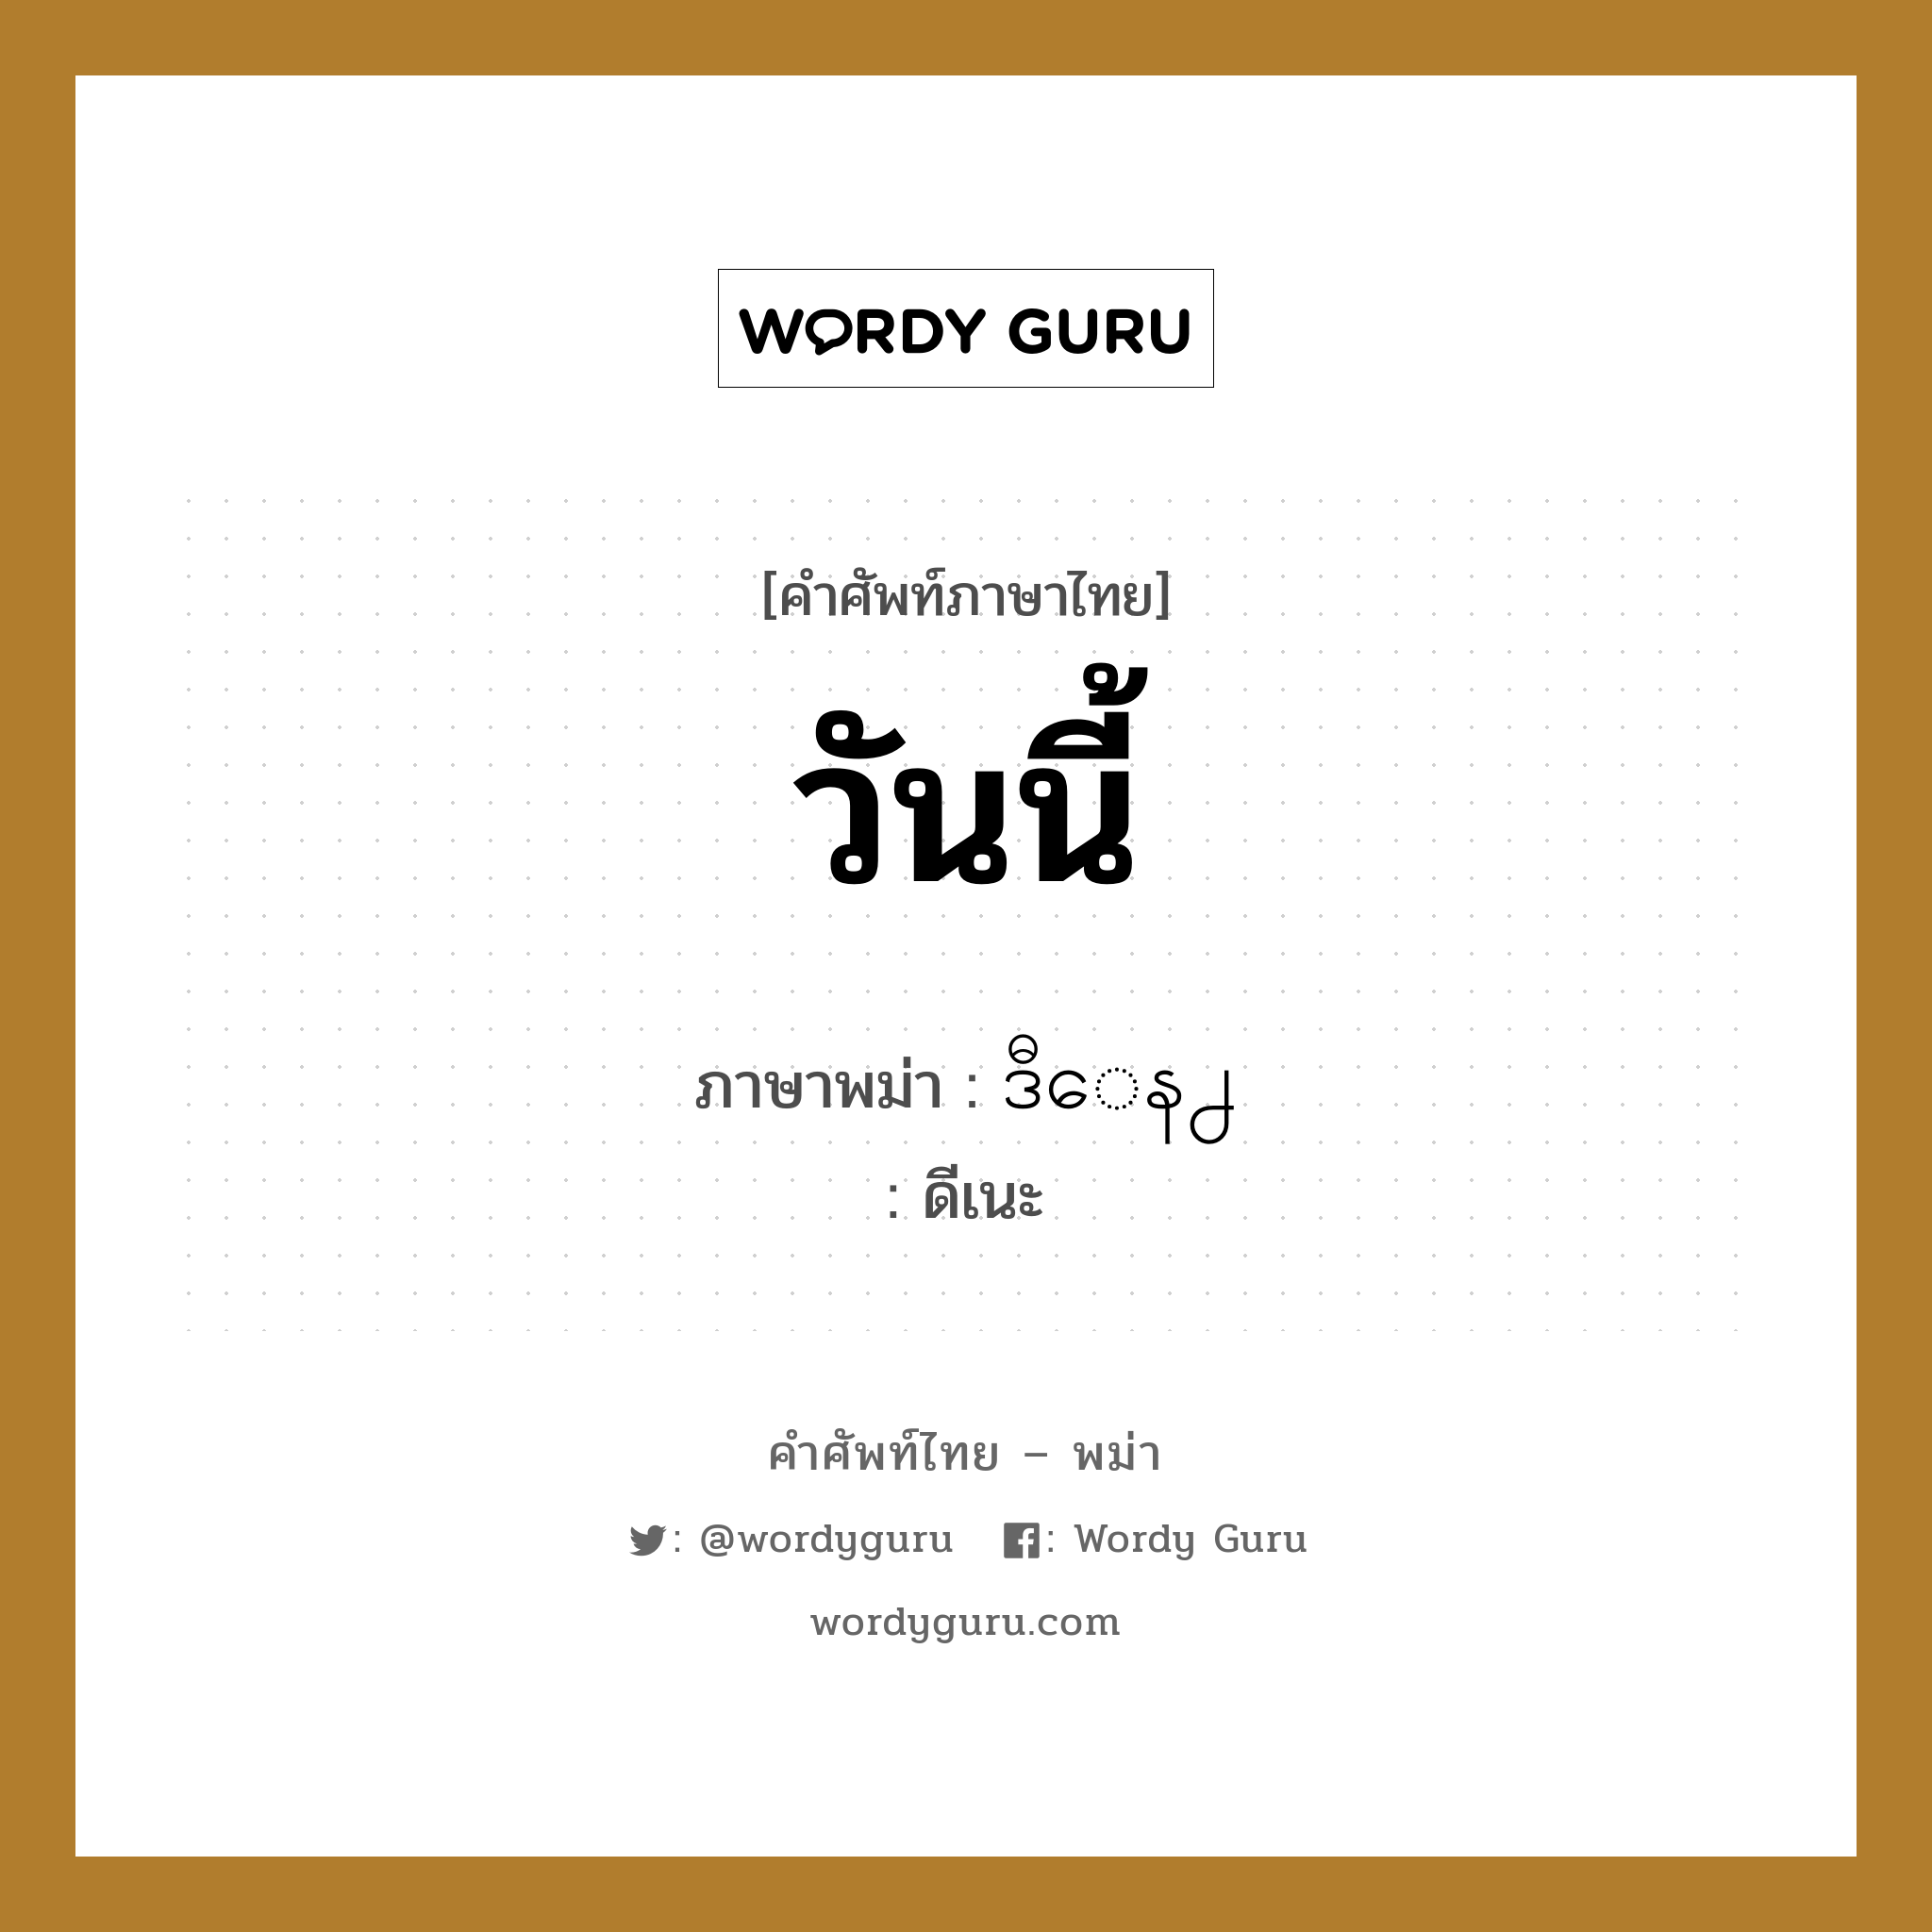 วันนี้ ภาษาพม่าคืออะไร, คำศัพท์ภาษาไทย - พม่า วันนี้ ภาษาพม่า ဒီေန႕ หมวด ทั่วไป ดีเนะ หมวด ทั่วไป